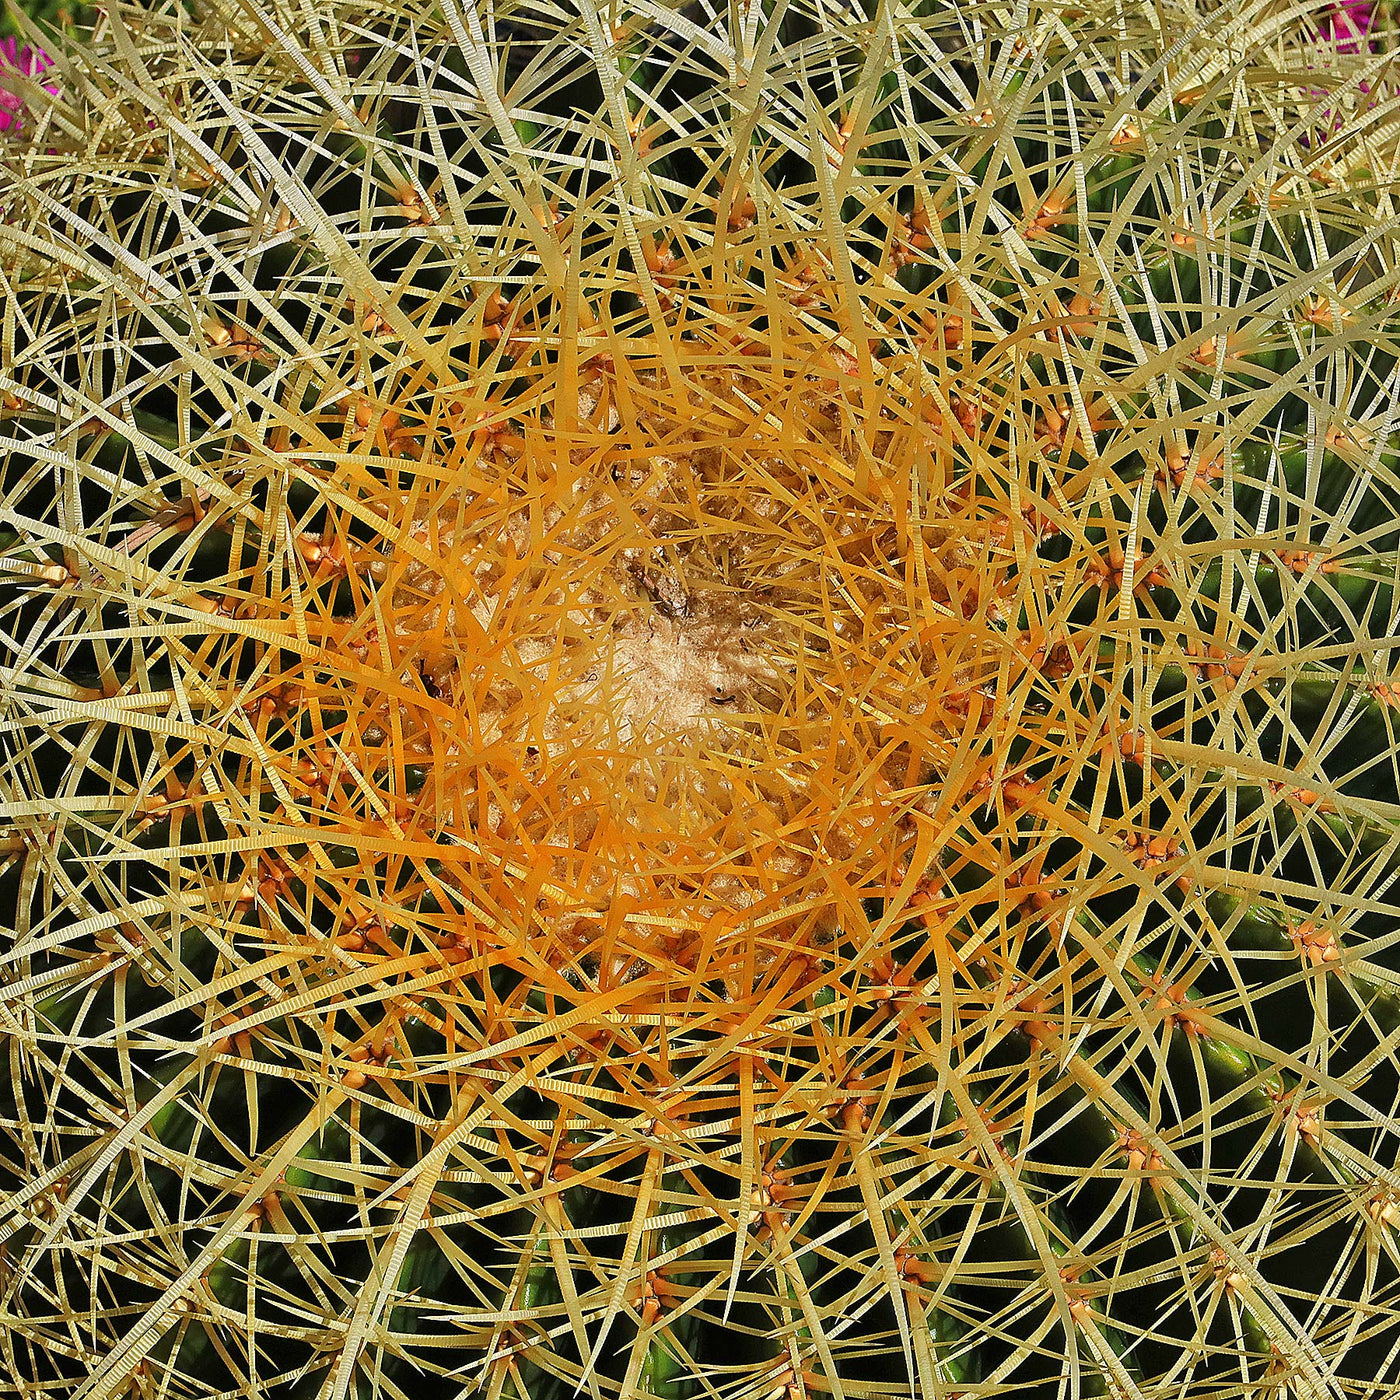 Golden Barrel Cactus - Echinocactus grusonii -14